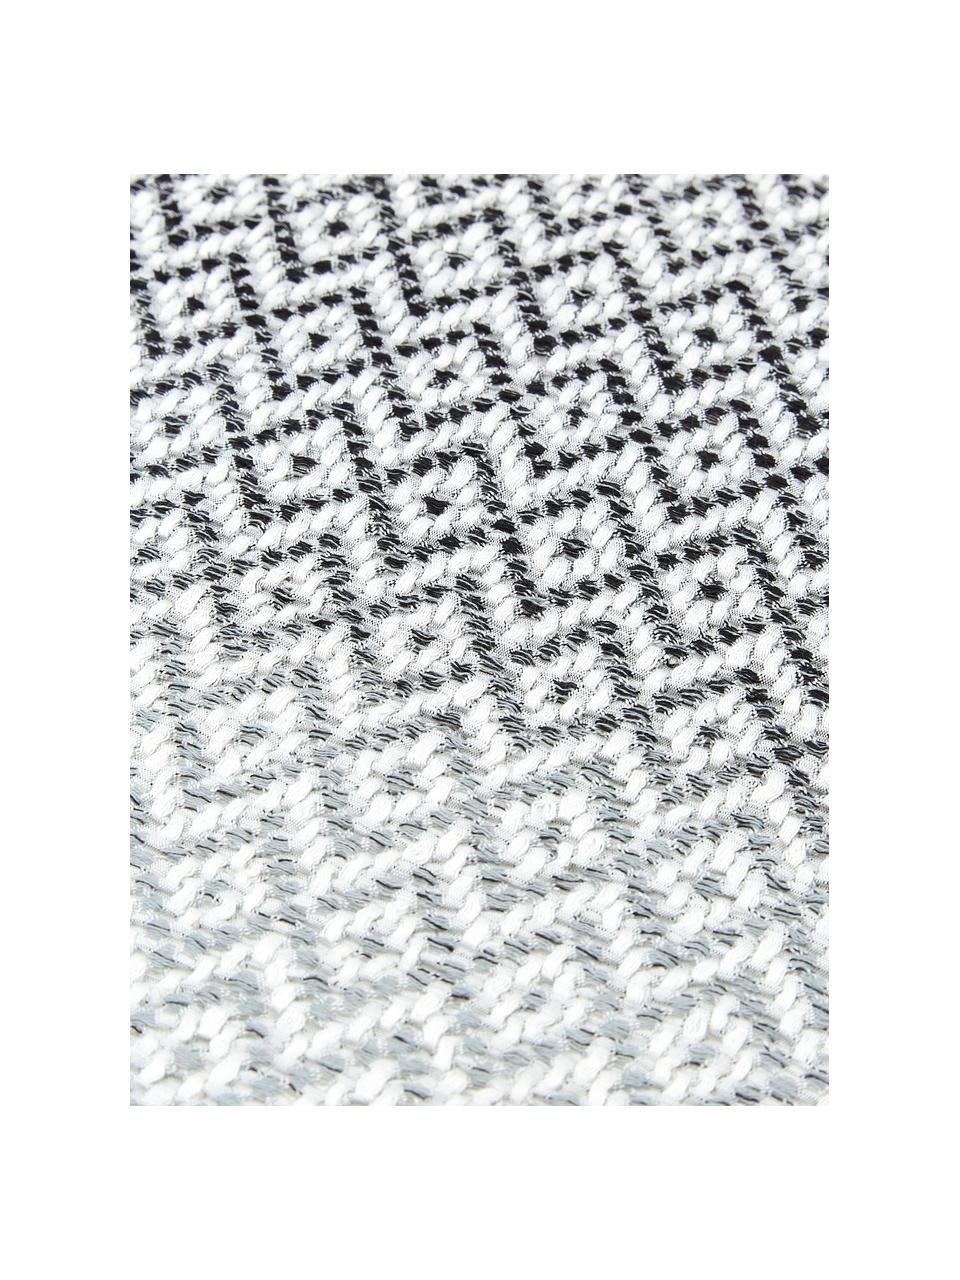 Narzuta z bawełny Dia, 100% bawełna, Czarny, biały, S 180 x D 235 cm (do łóżek o wymiarach do 140 x 200)